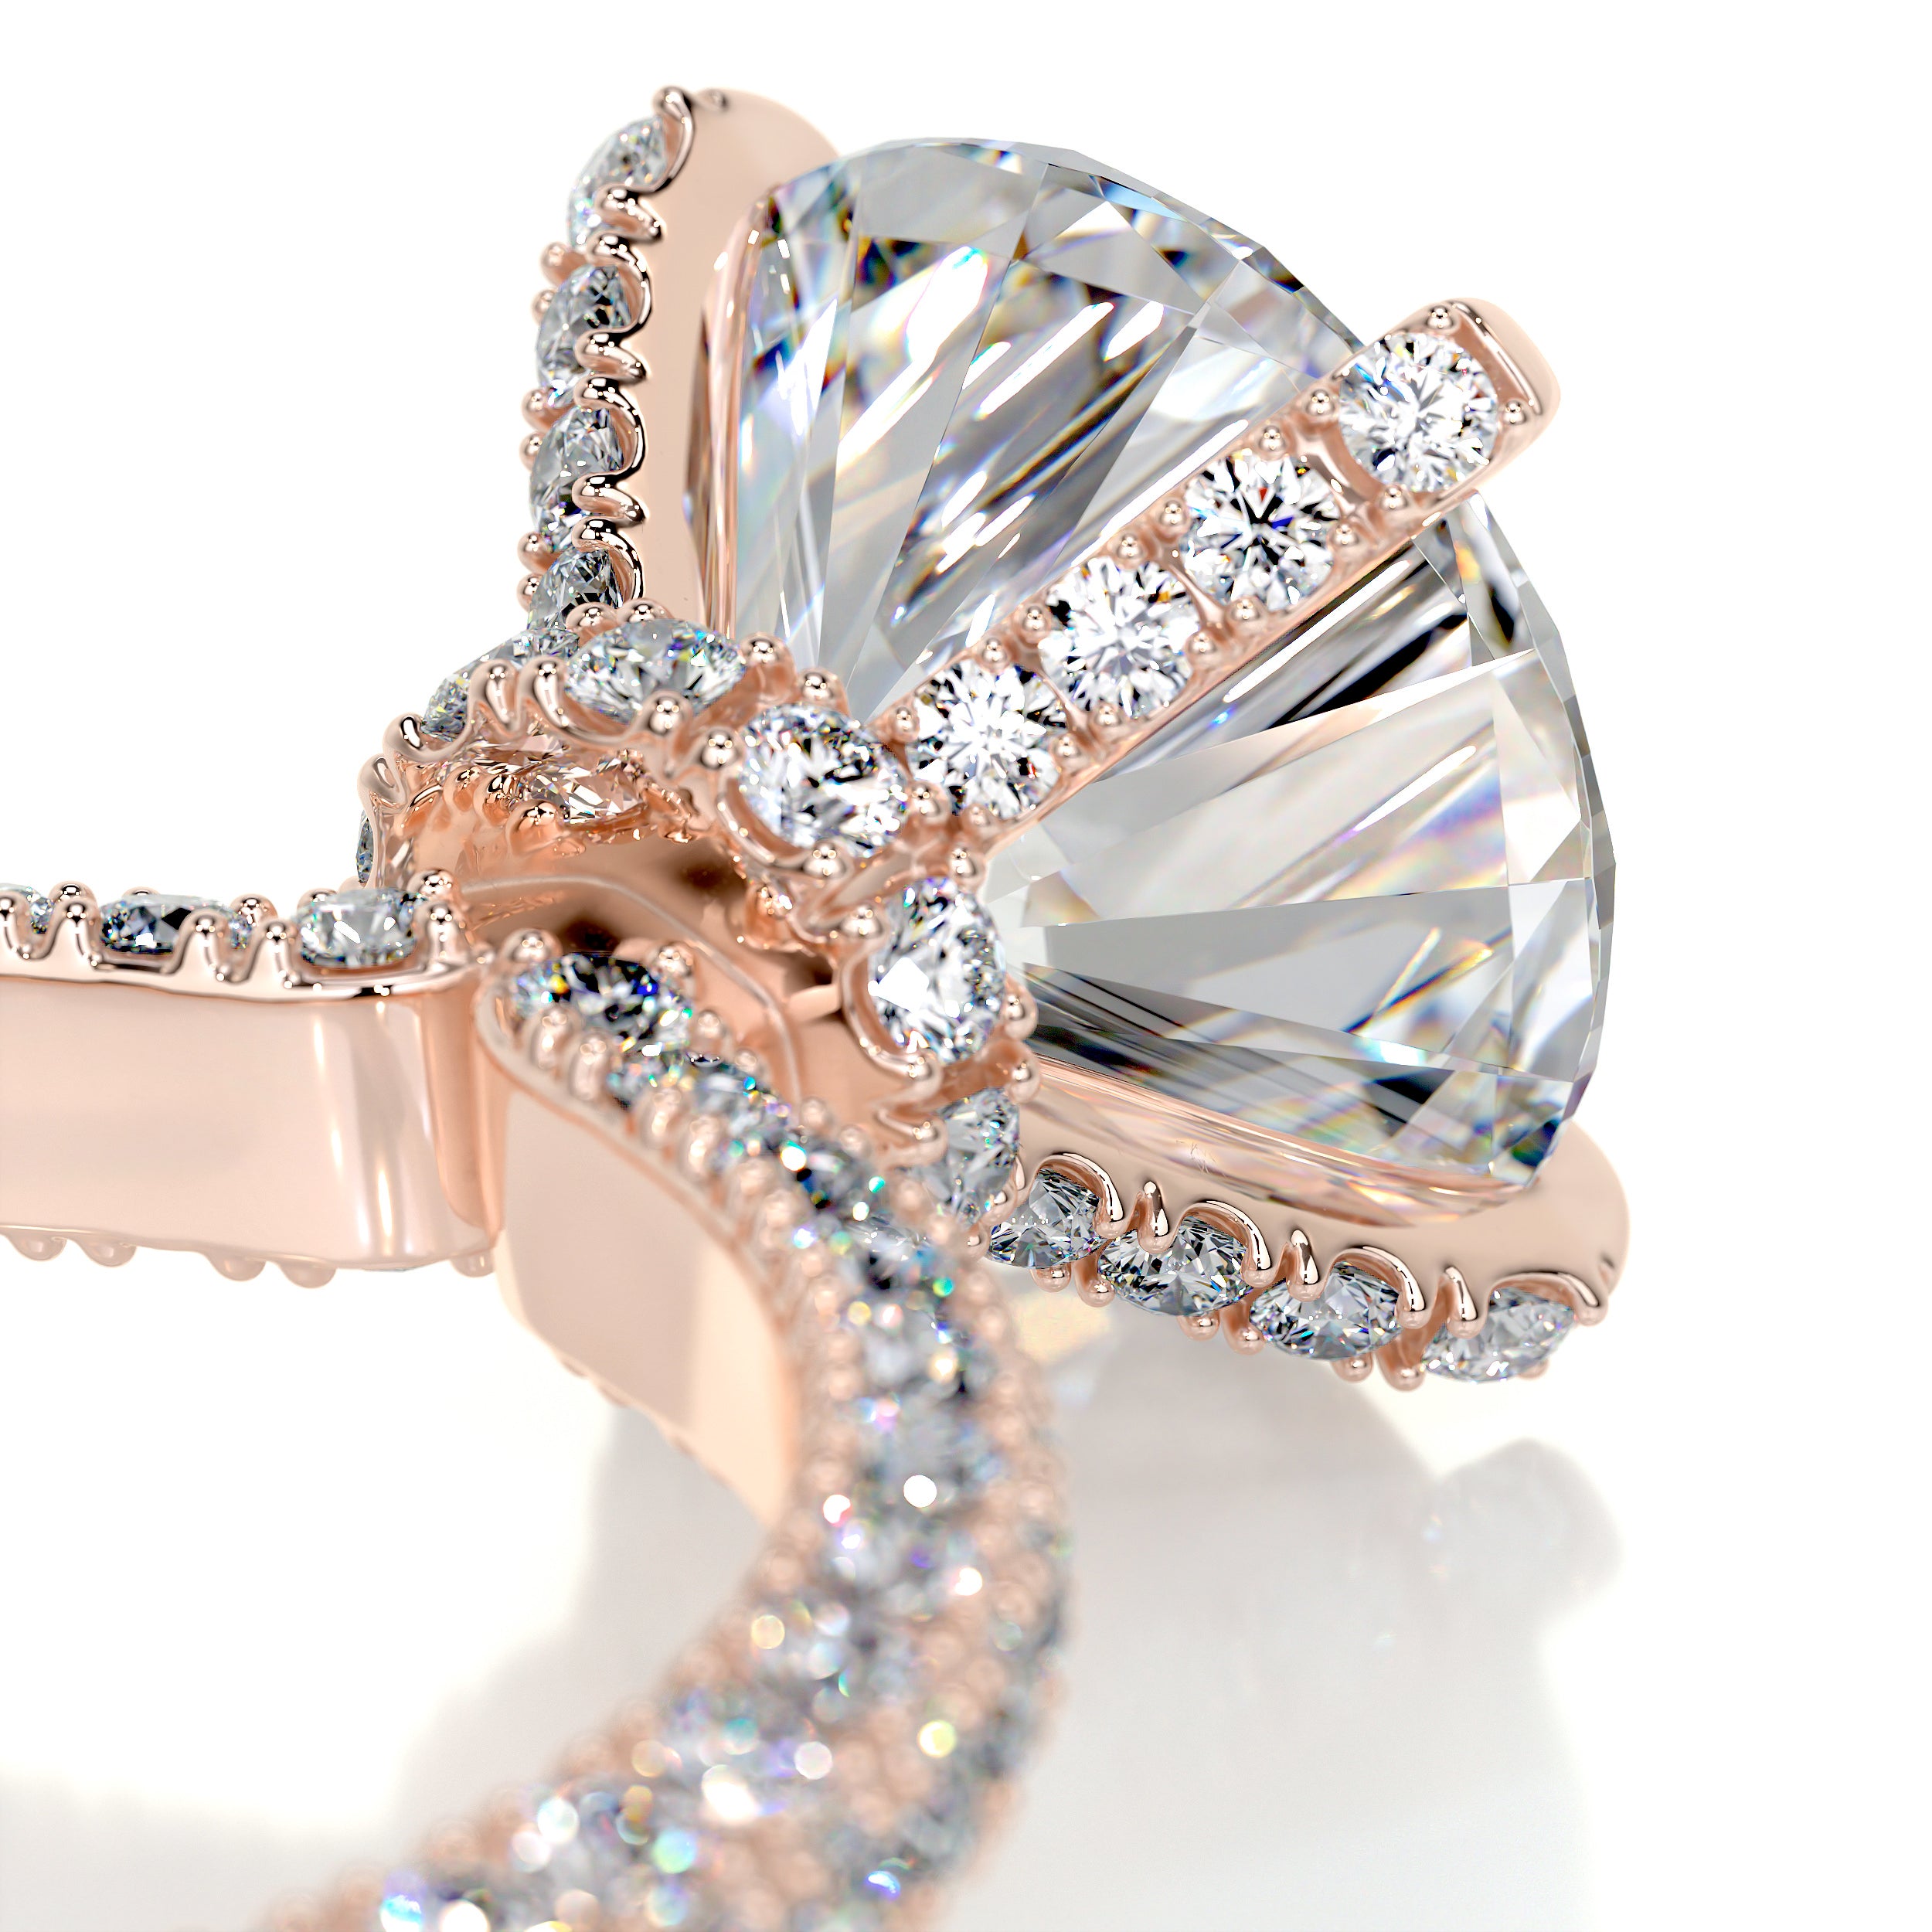 Milly Moissanite & Diamonds Ring   (4.12 Carat) -14K Rose Gold